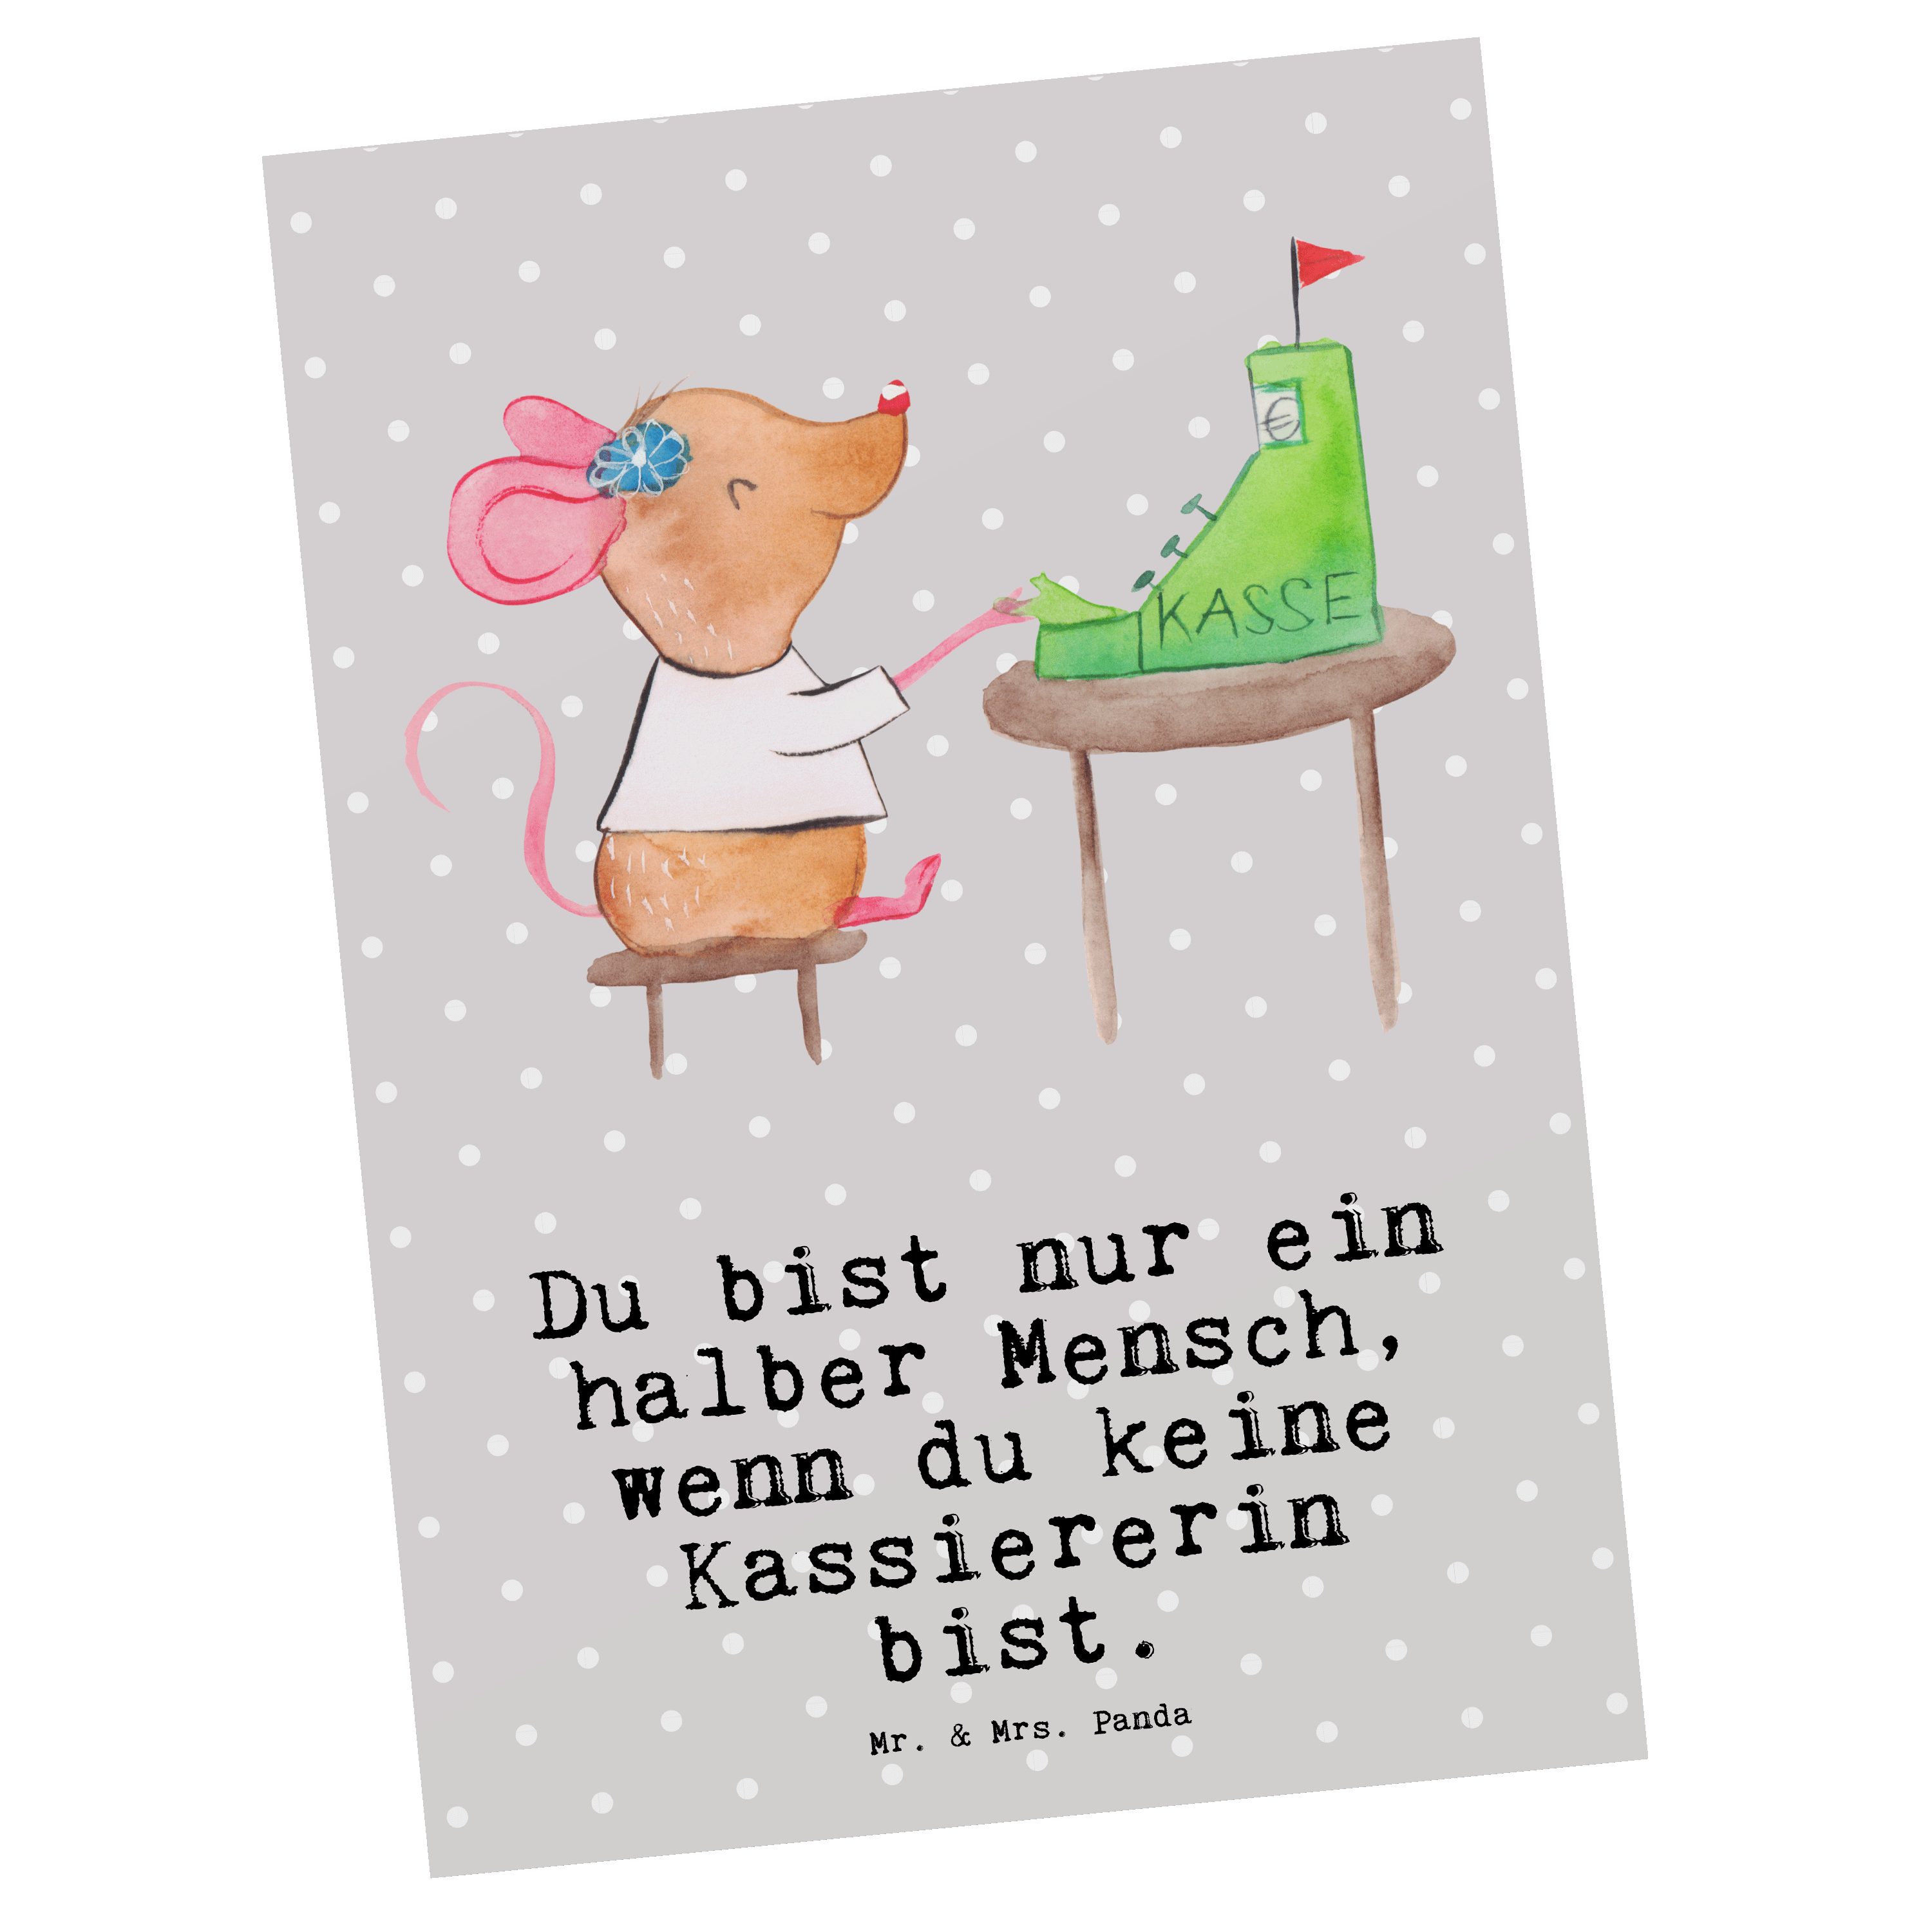 Mr. & Mrs. Panda Postkarte Kassiererin mit Herz - Grau Pastell - Geschenk, Arbeitskollege, Gebur